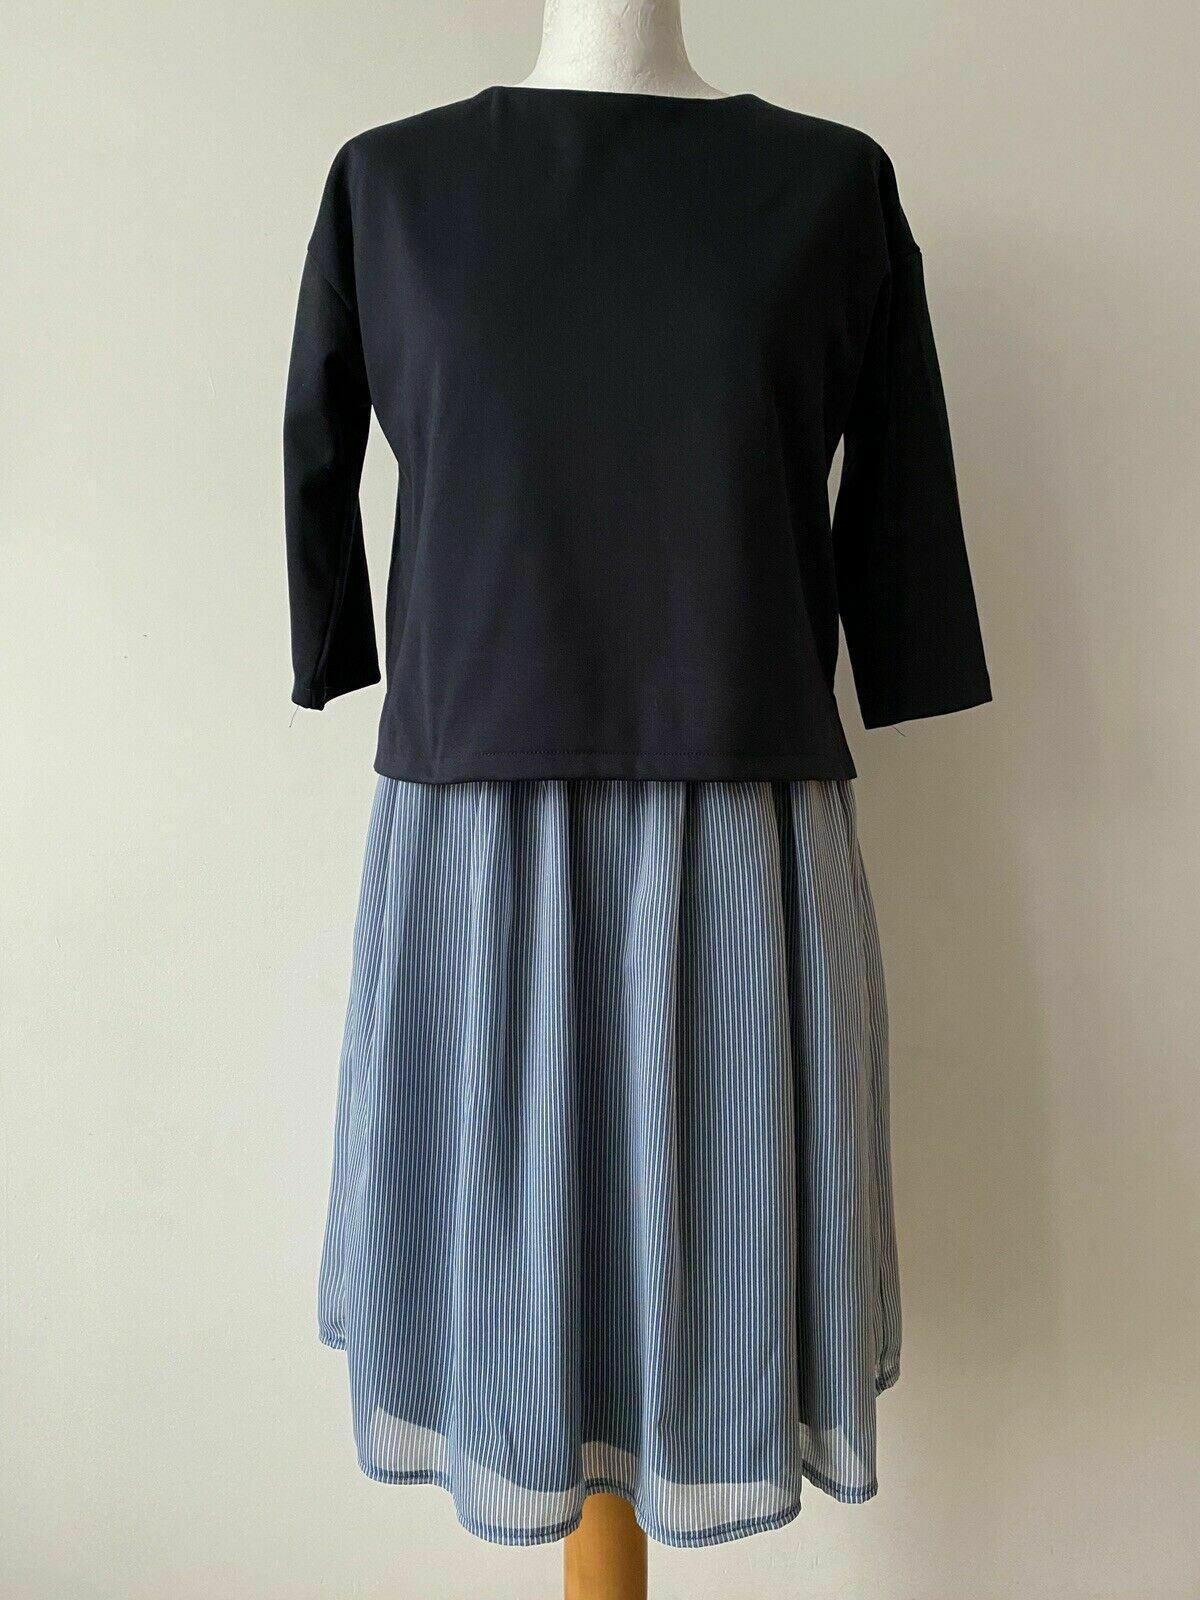 Cartoon Daydream Layered Top Dress Size 12 Blue